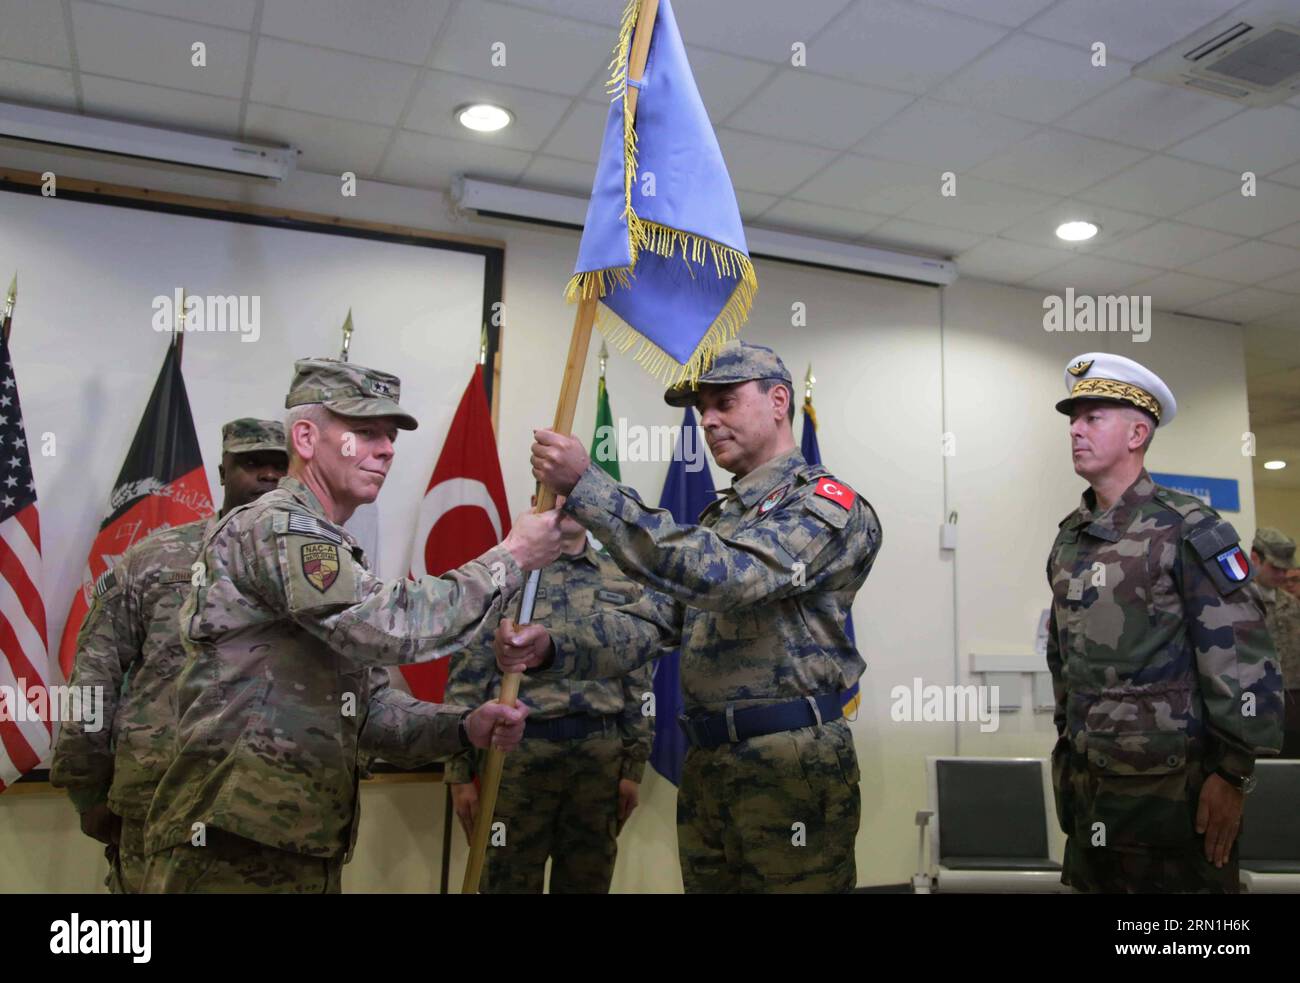 (141231) -- KABUL, 31 de diciembre de 2014 -- el comandante del Comando Aéreo de la OTAN-Afganistán John K. McMullen (izquierda, frente) da bandera ceremonial al comandante entrante, el general de división Mehmet Cahit Bakir (segundo derecho) durante la ceremonia de cambio de mando del Aeropuerto Internacional Hamid Karzai de Francia a Turquía en Kabul, Afganistán, el 31 de diciembre de 2014. )(bxq) AFGANISTÁN-KABUL-AEROPUERTO-CAMBIO DE MANDO-CEREMONIA Rahmin PUBLICATIONxNOTxINxCHN Kabul DEC 31 2014 Comando Aéreo de la OTAN Afganistán Comandante General de División de los EE.UU. John K McMullen l El Frente da Bandera Ceremonial Comandante General de División entrante Mehmet Foto de stock